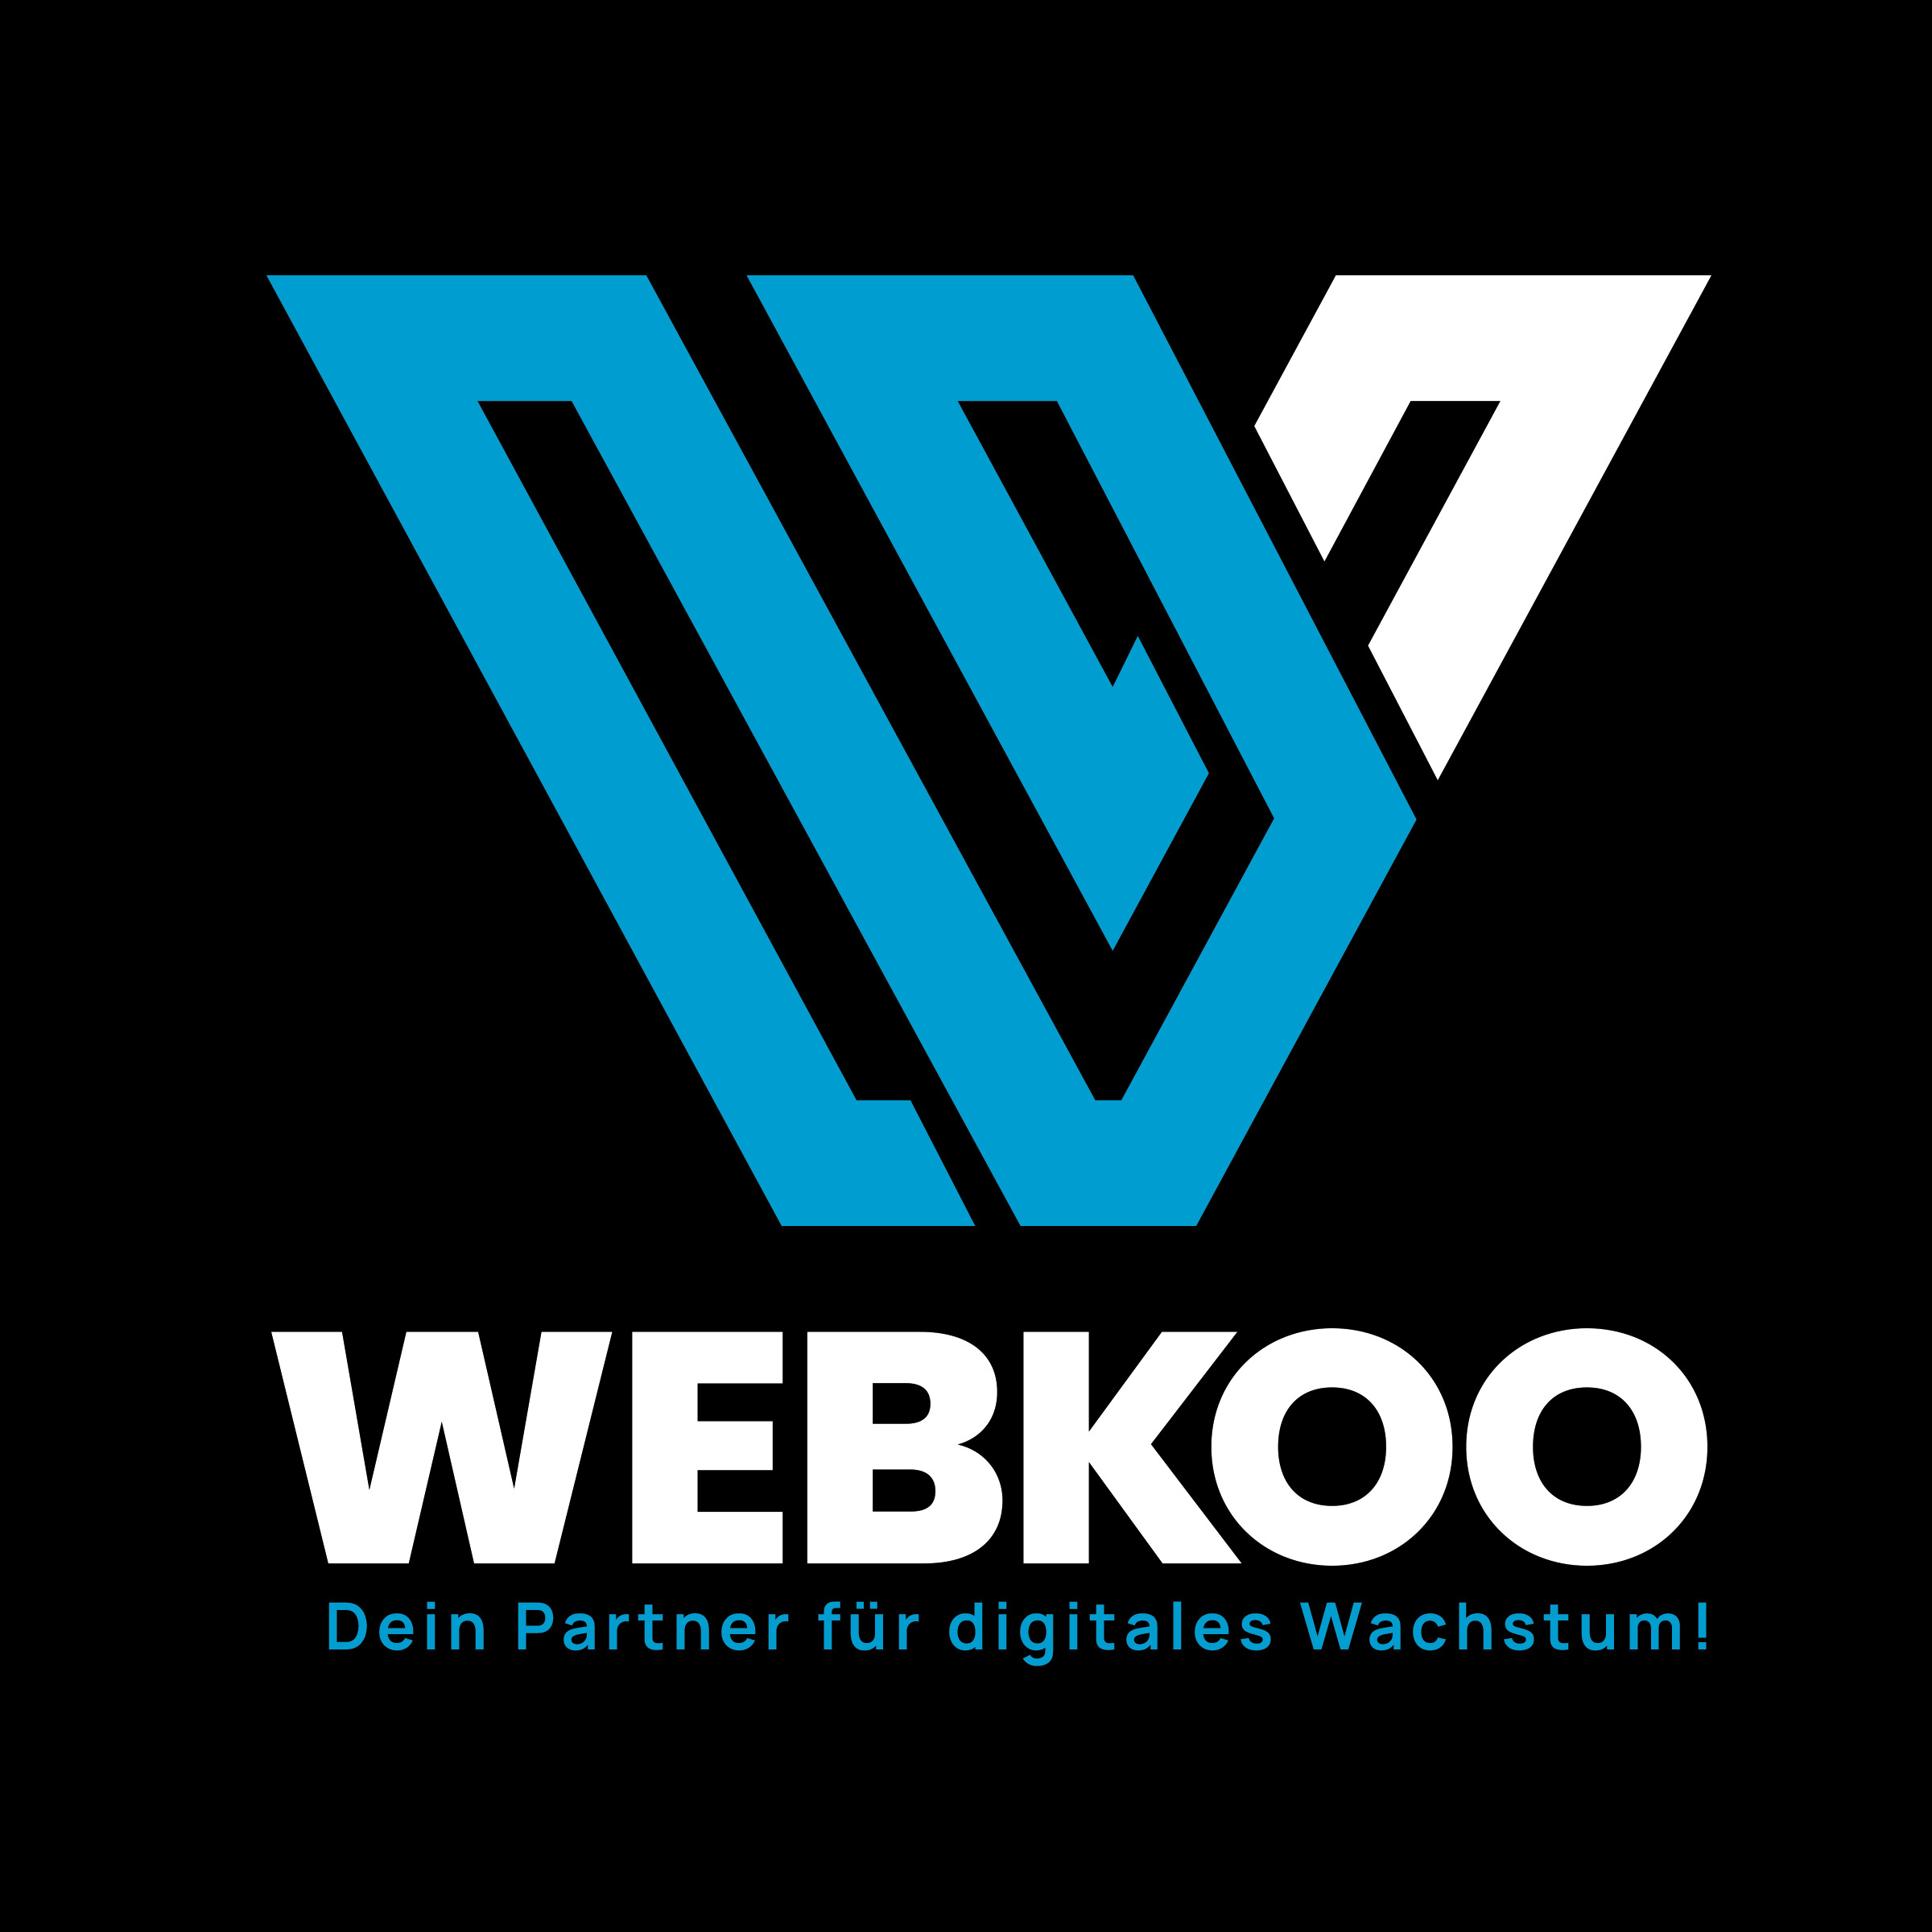 Webkoo - Dein Partner für digitales Wachstum! in Starnberg - Logo